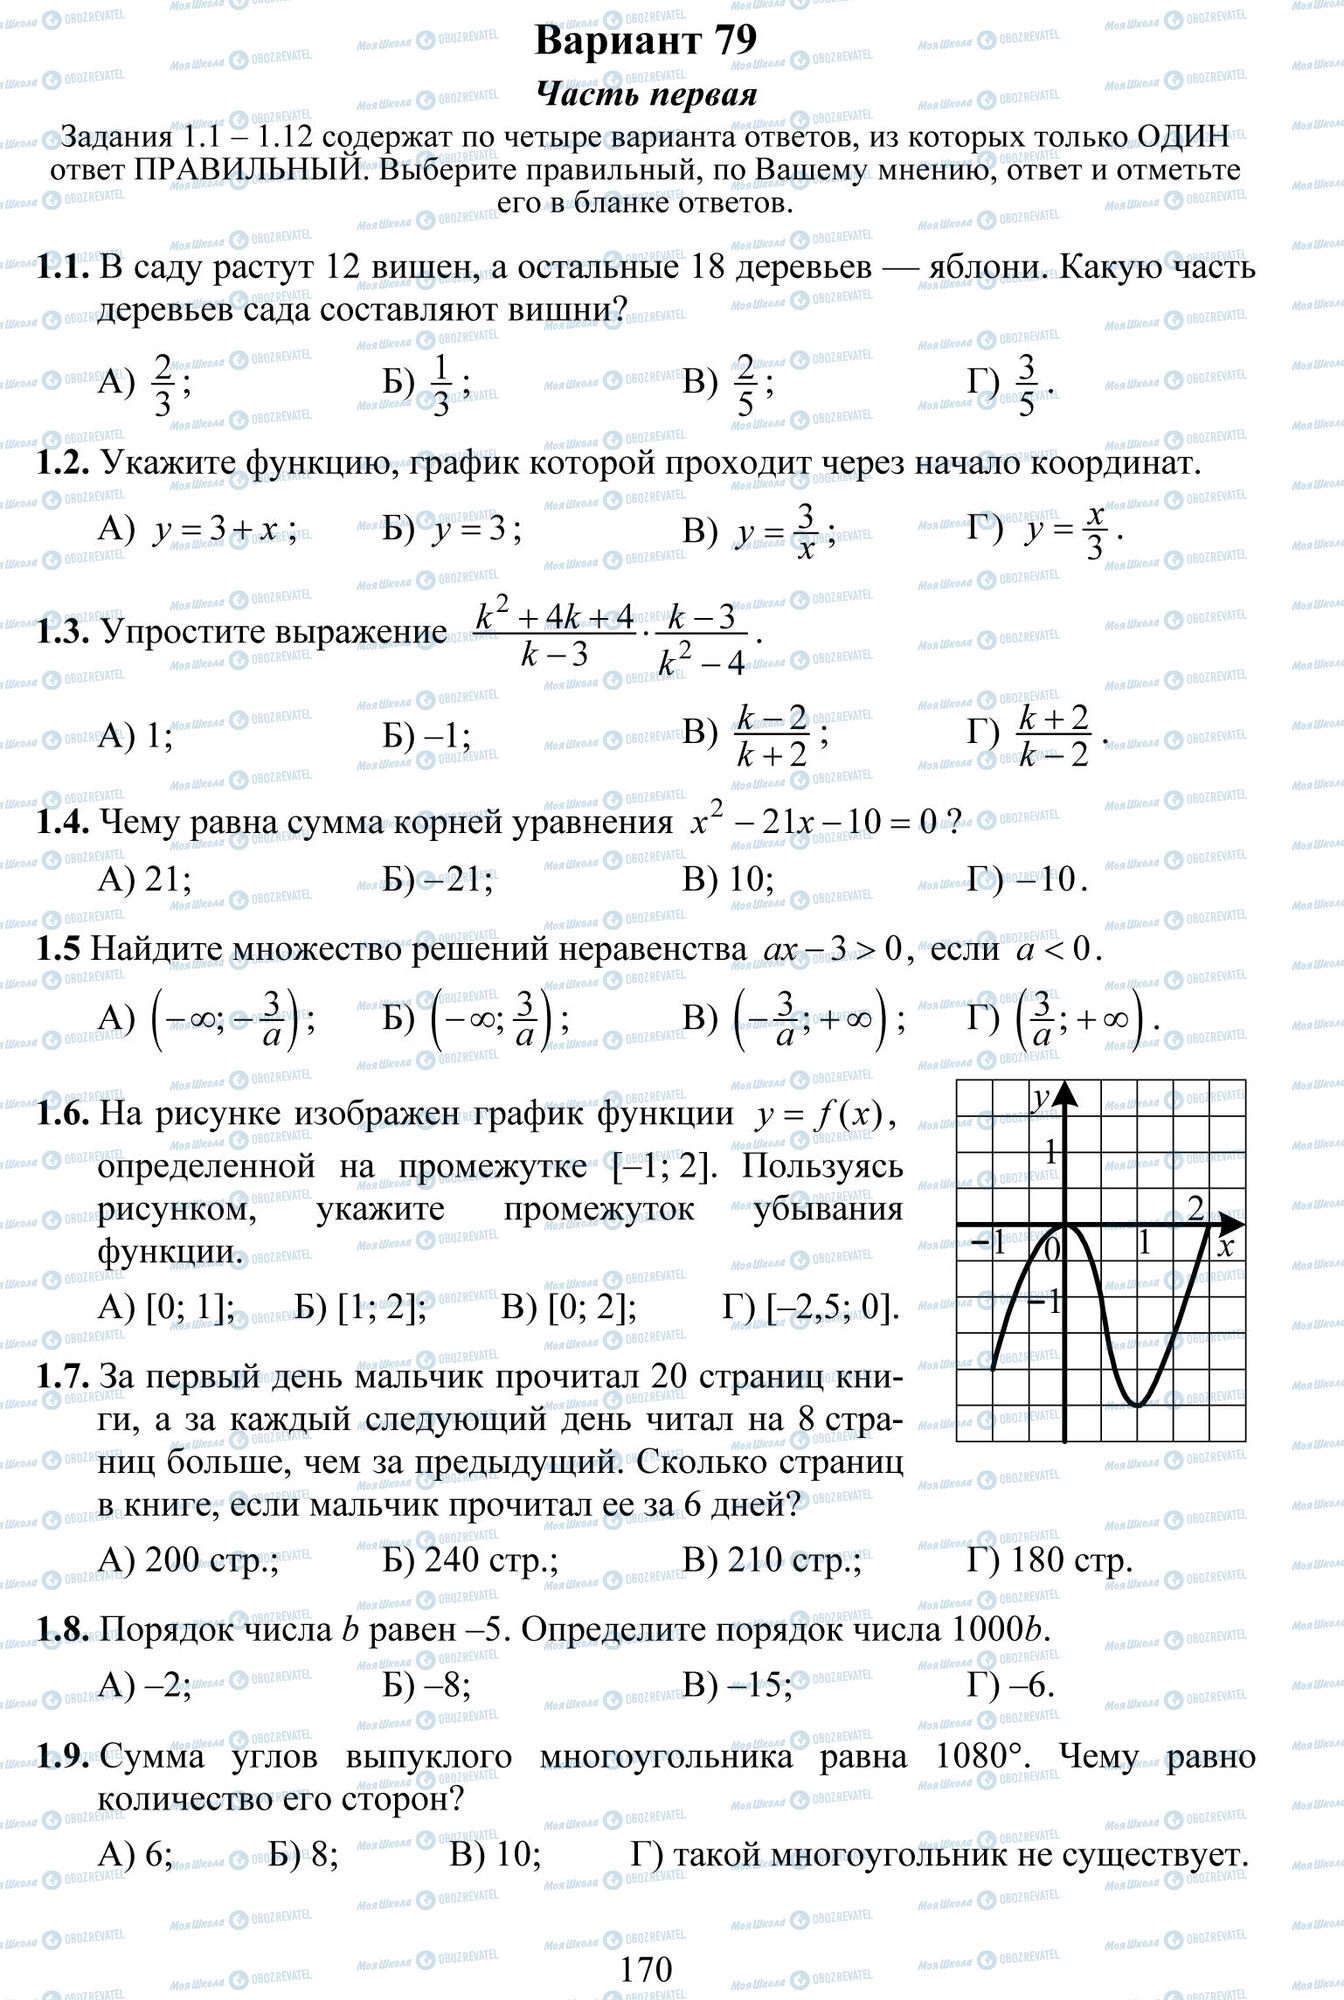 ДПА Математика 9 класс страница 1-9